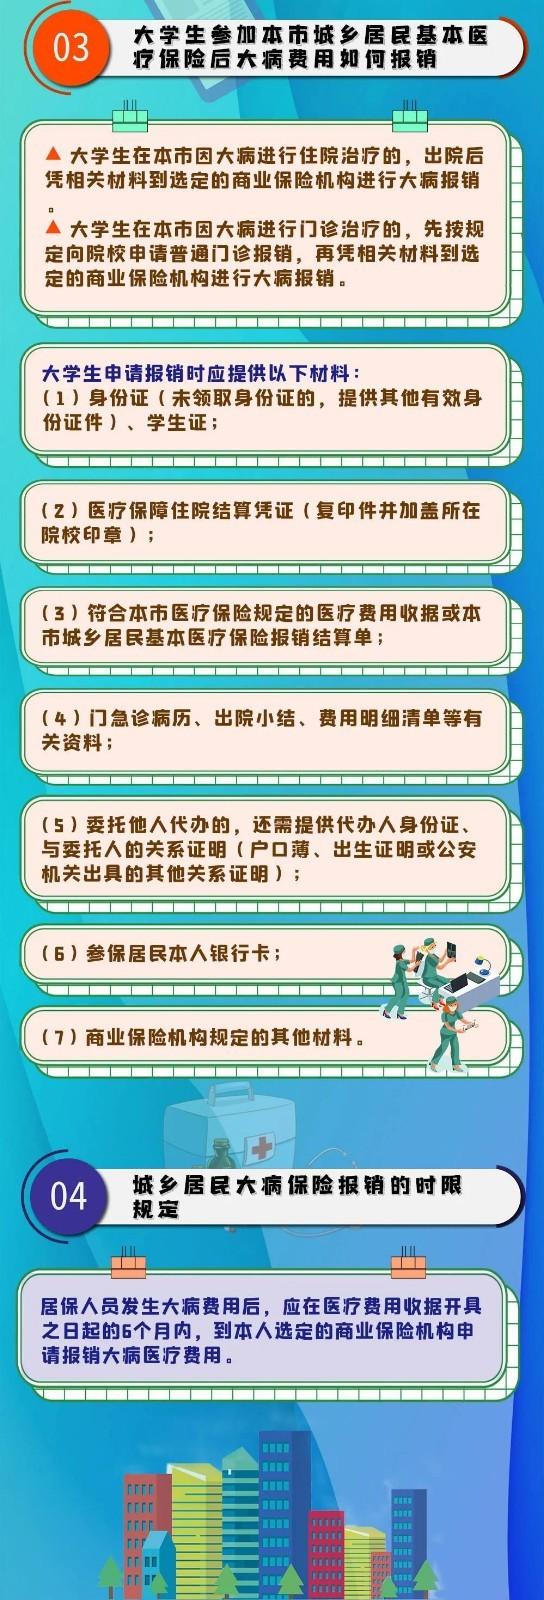 (上海大病医保如何申请)上海城乡居民大病医保怎么报销的-第2张图片-牧野网